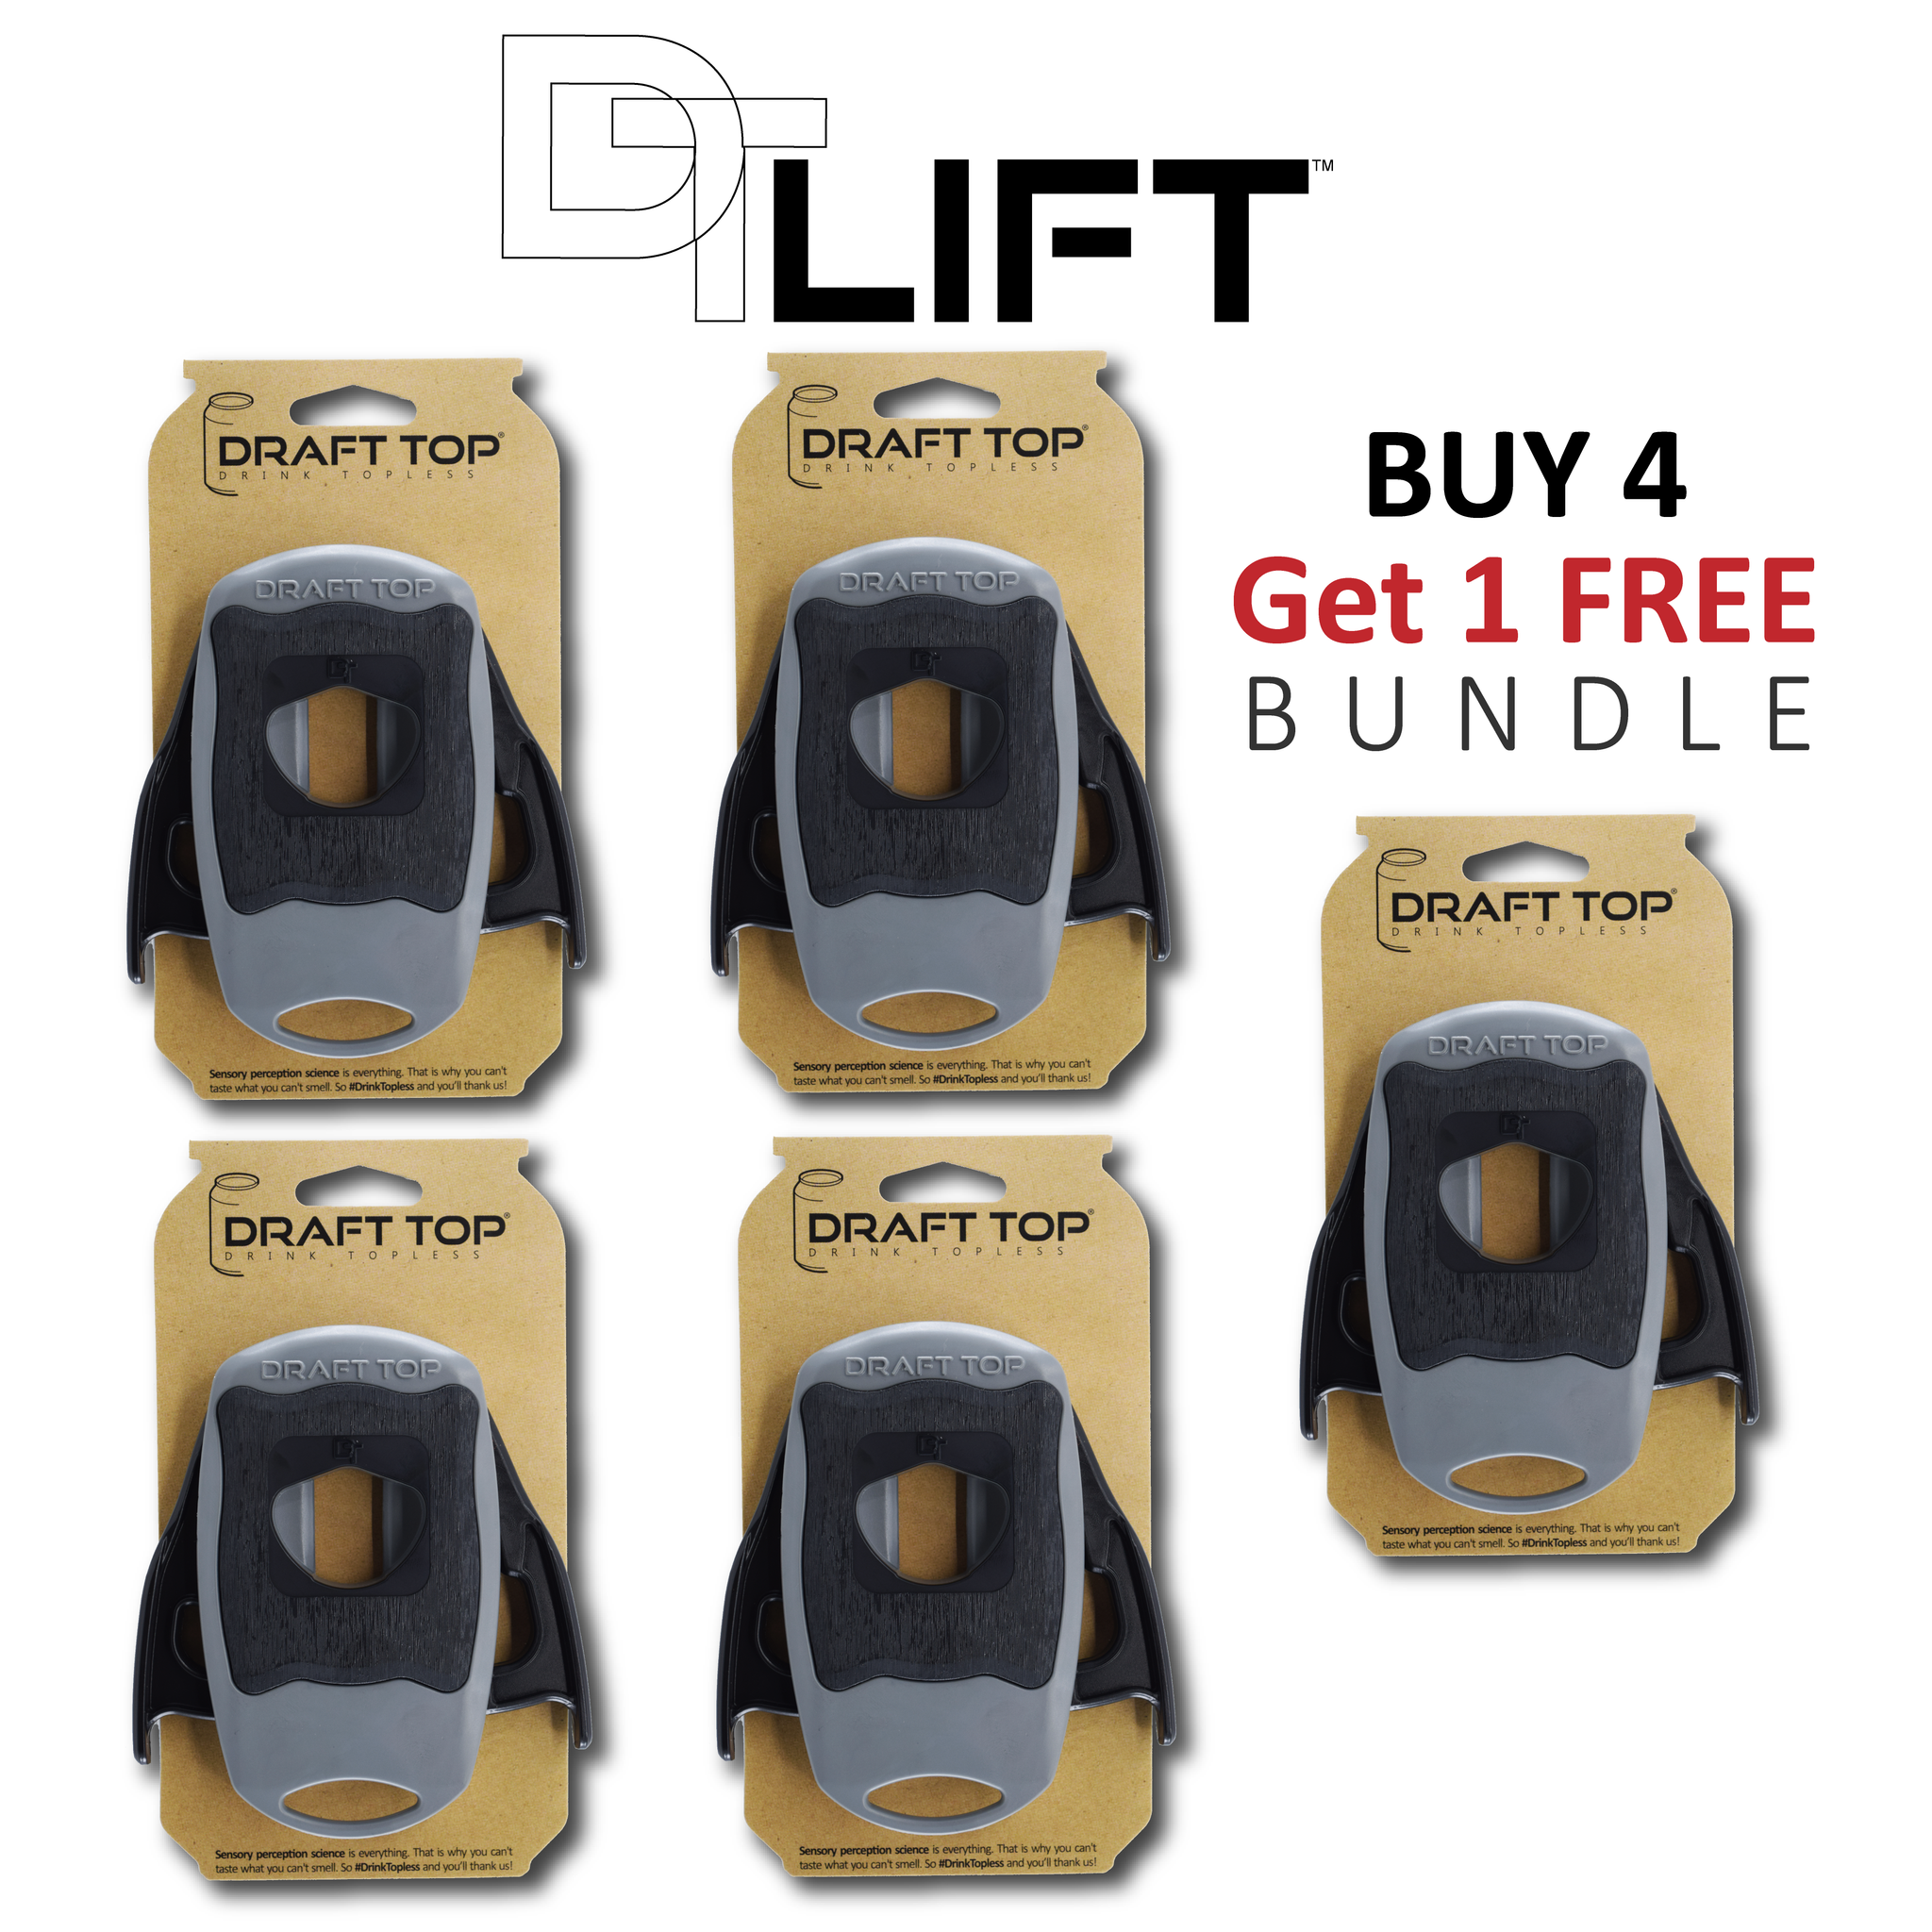 Buy 4 Get 1 Free - Draft Top® LIFT Bundle Pack (5) by Draft Top, Inc.